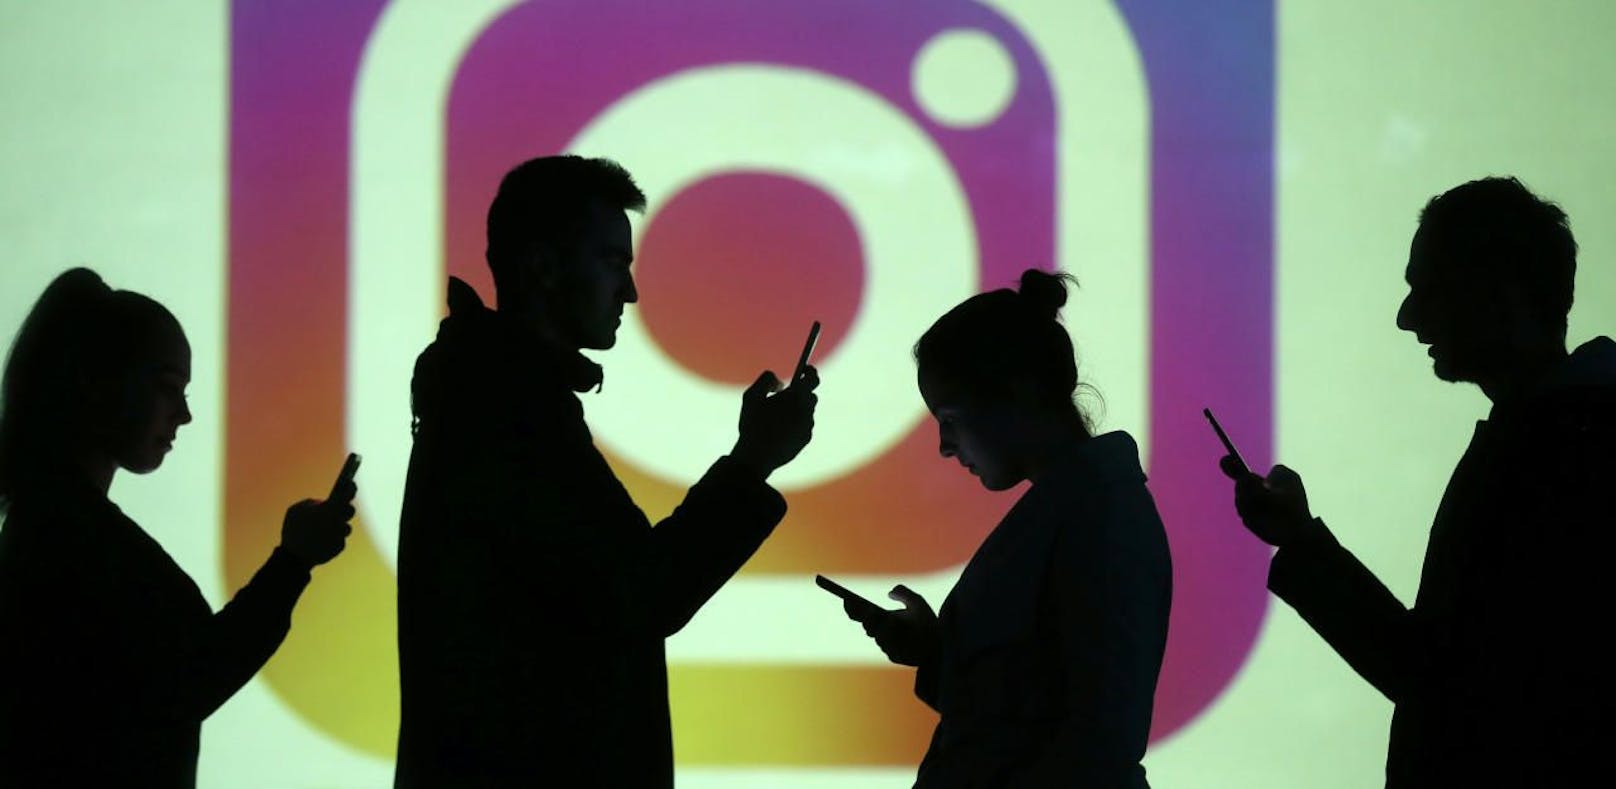 Plötzlich ausgesperrt: Instagram geht gegen Jugendliche vor